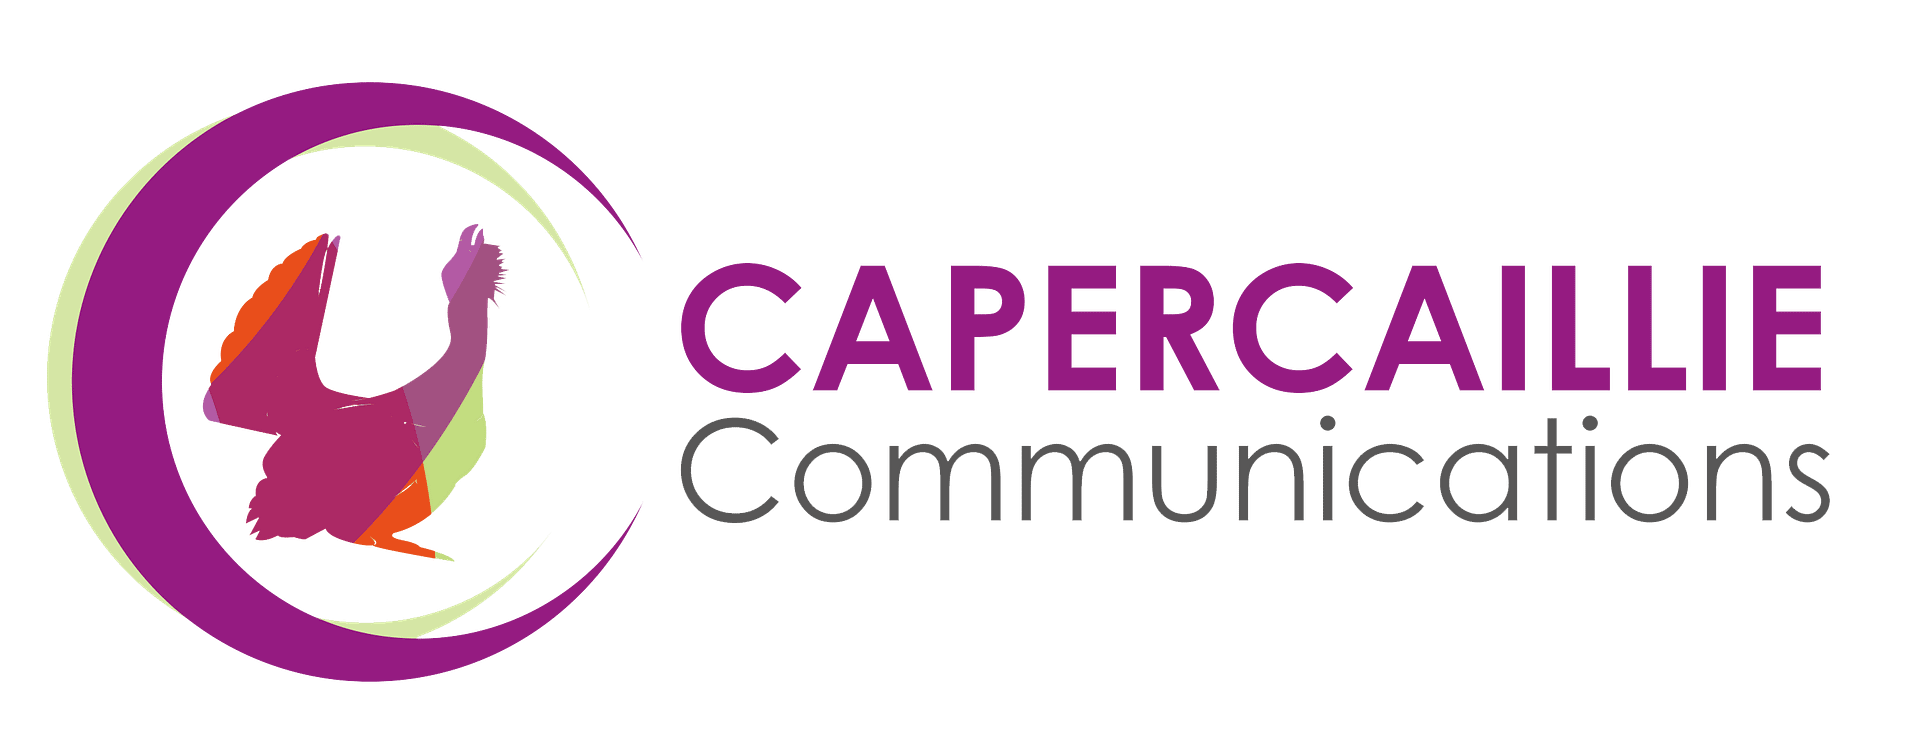 Capercom Final logo_transparent